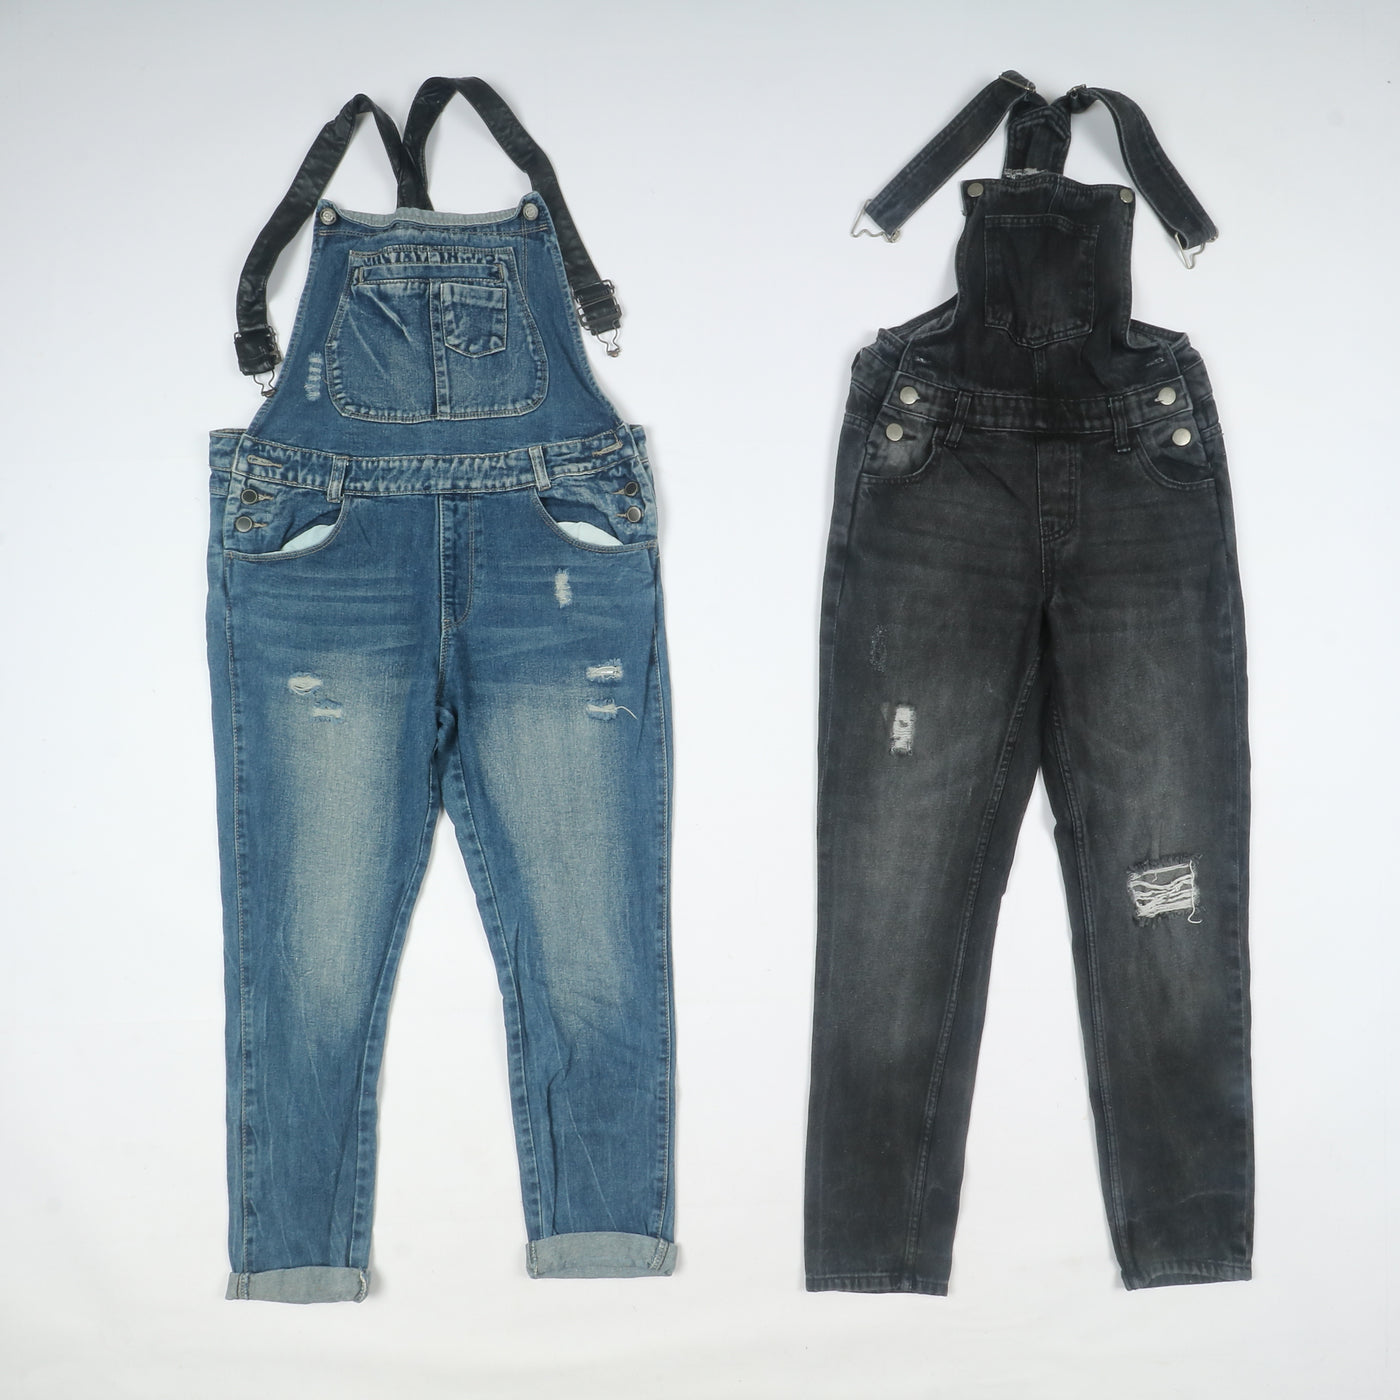 Salopette jeans vintage e deadstock uomo - donna stock da 28pz